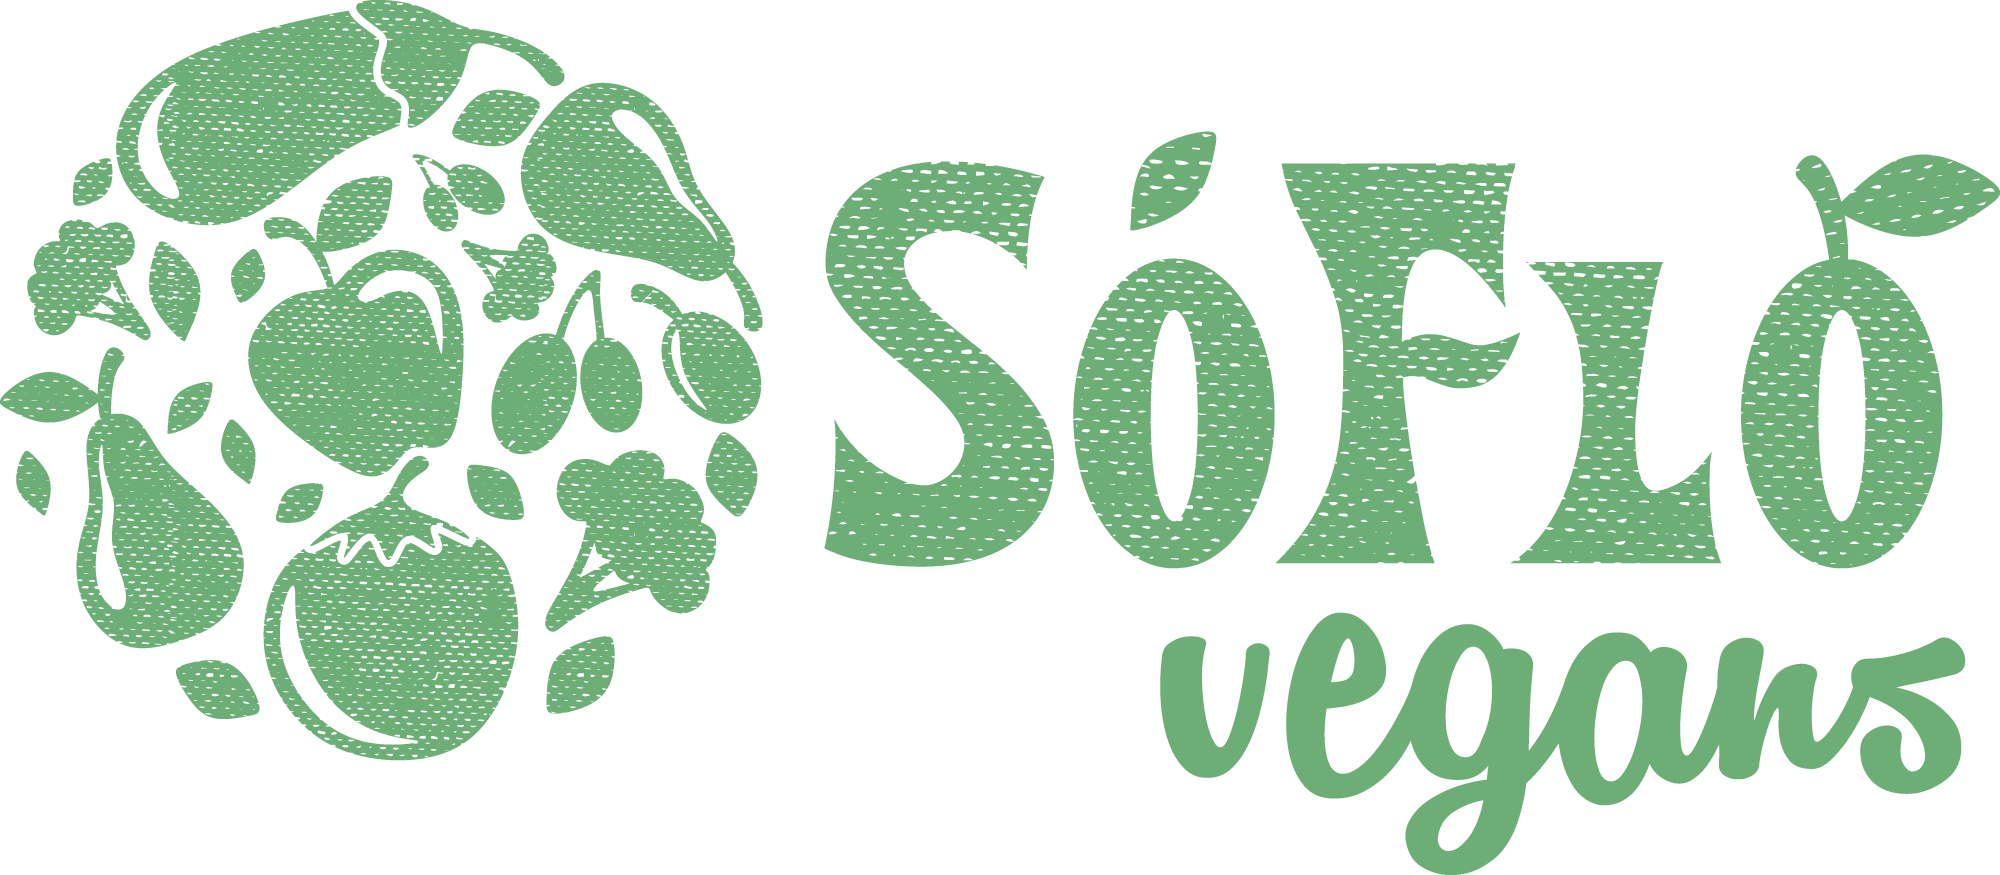 SoFlo Vegans